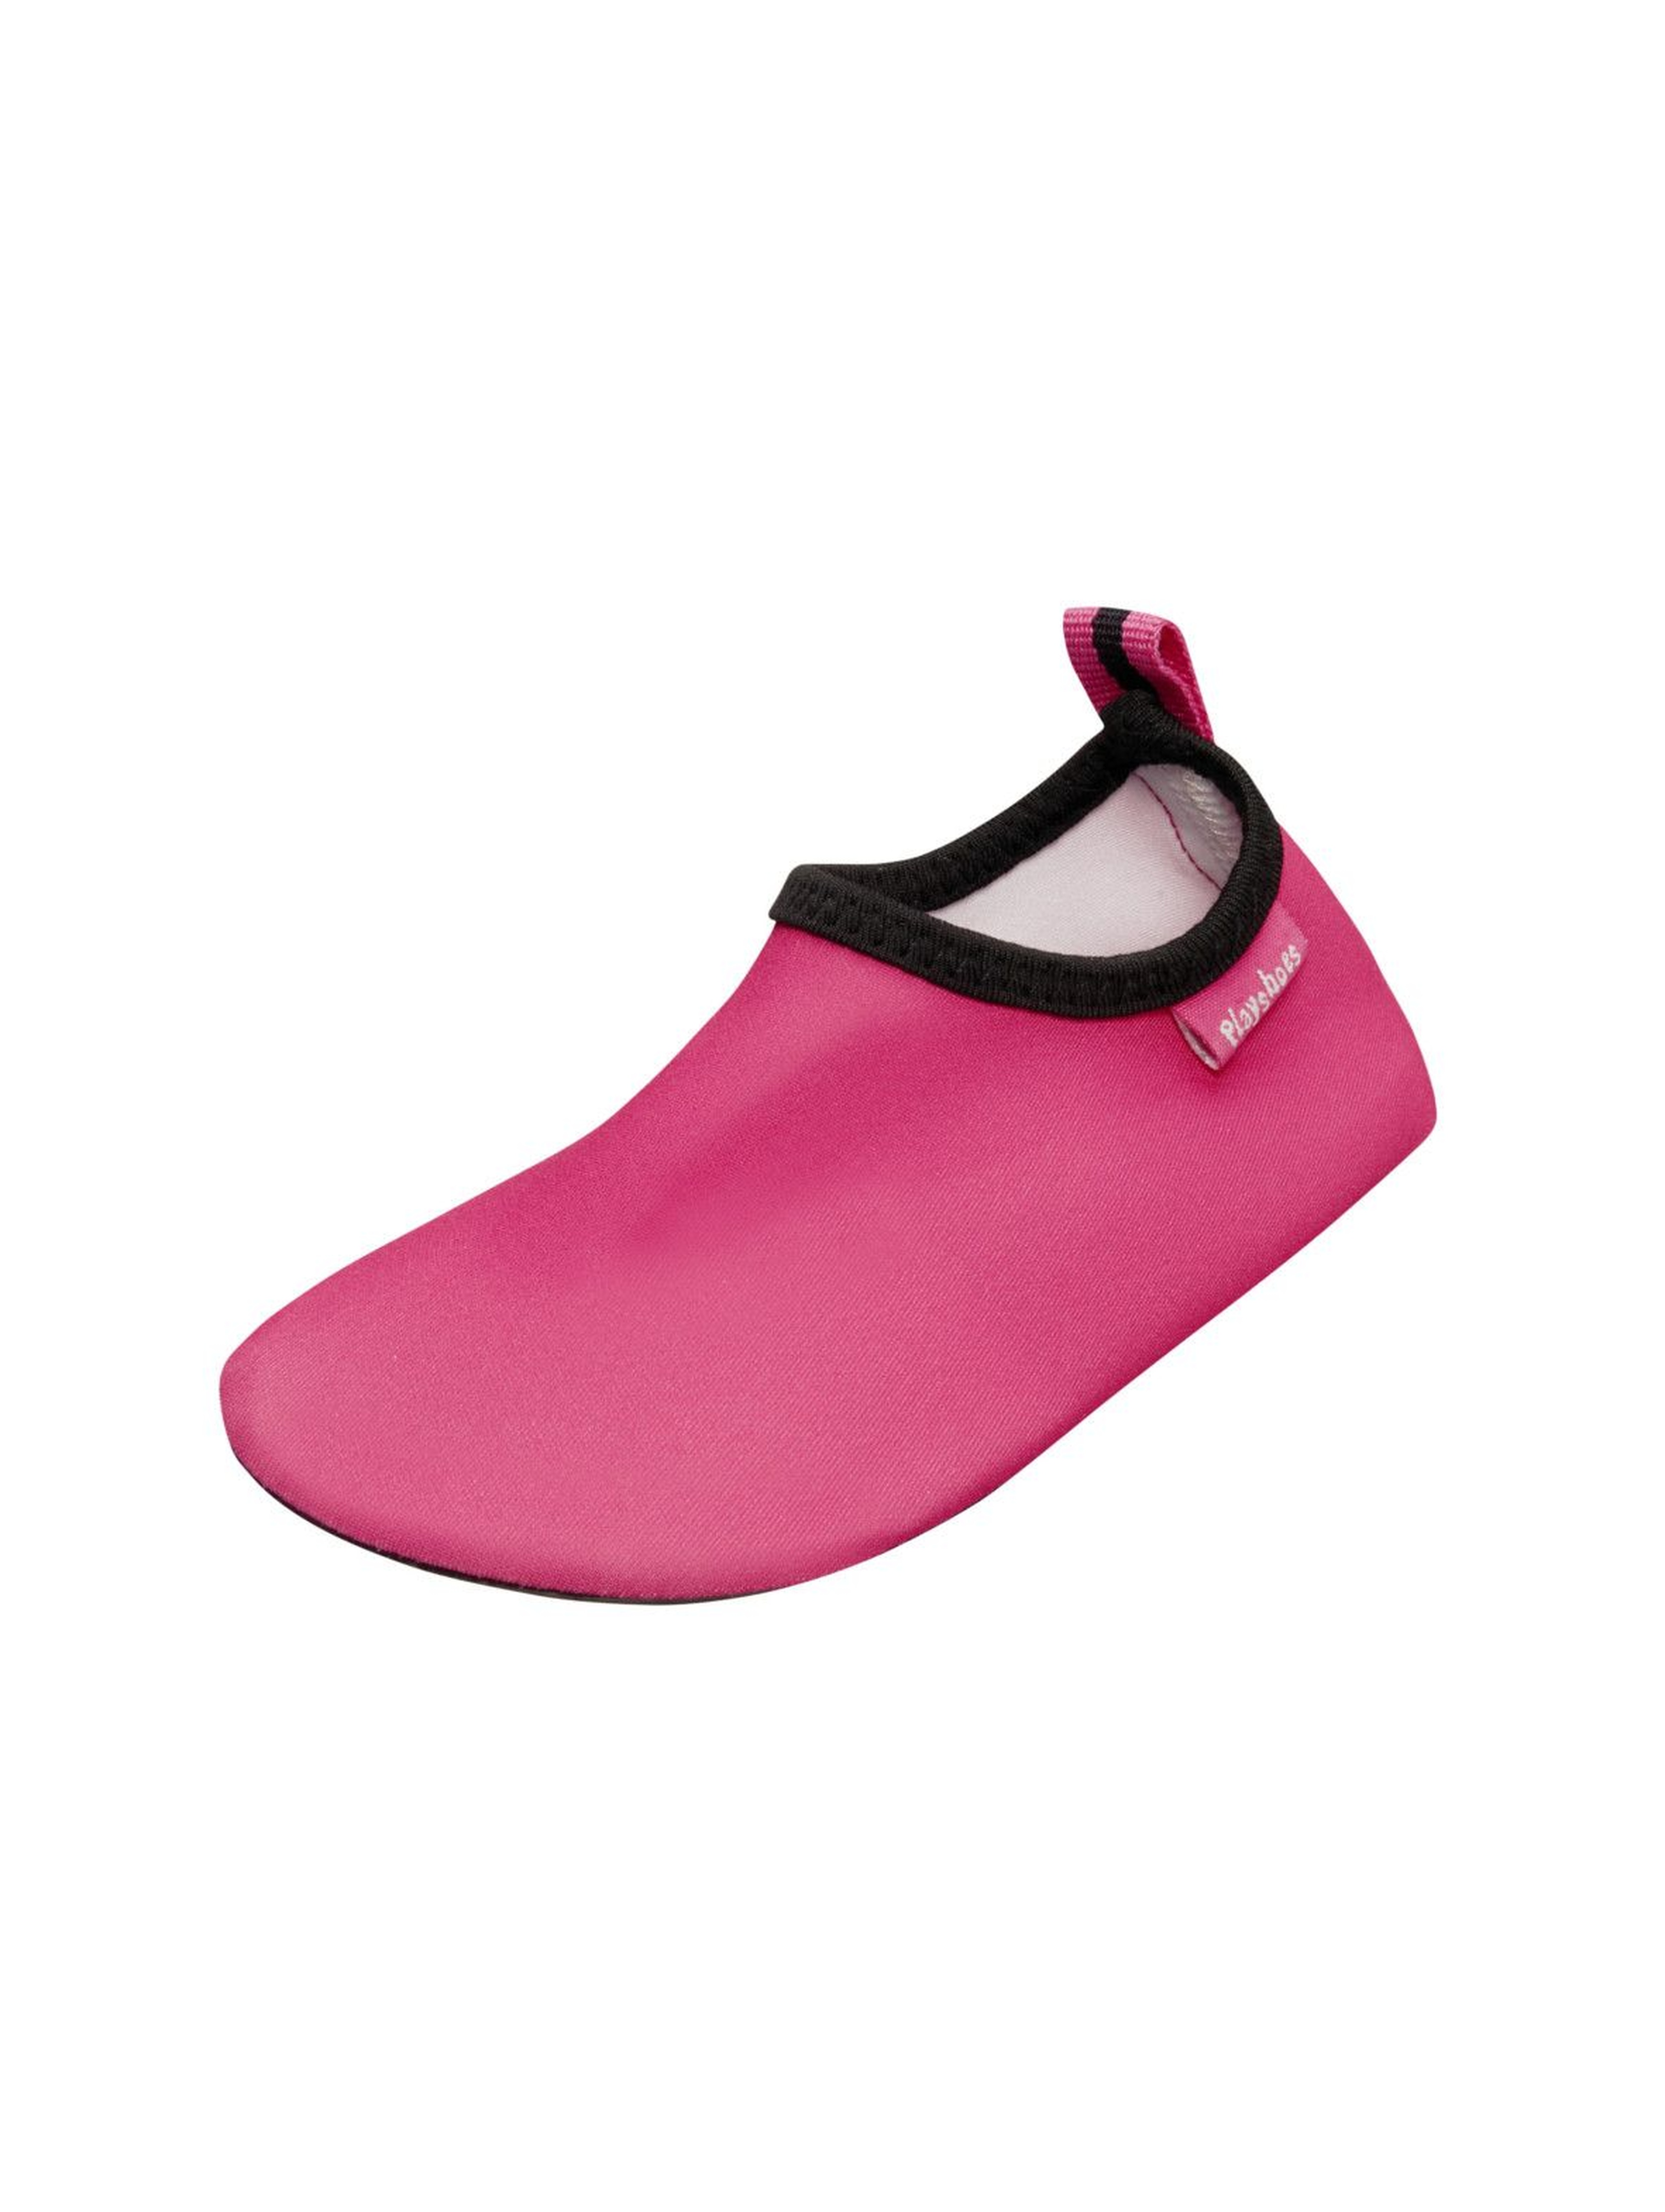 Buty kąpielowe dla dziewczynki - różowe